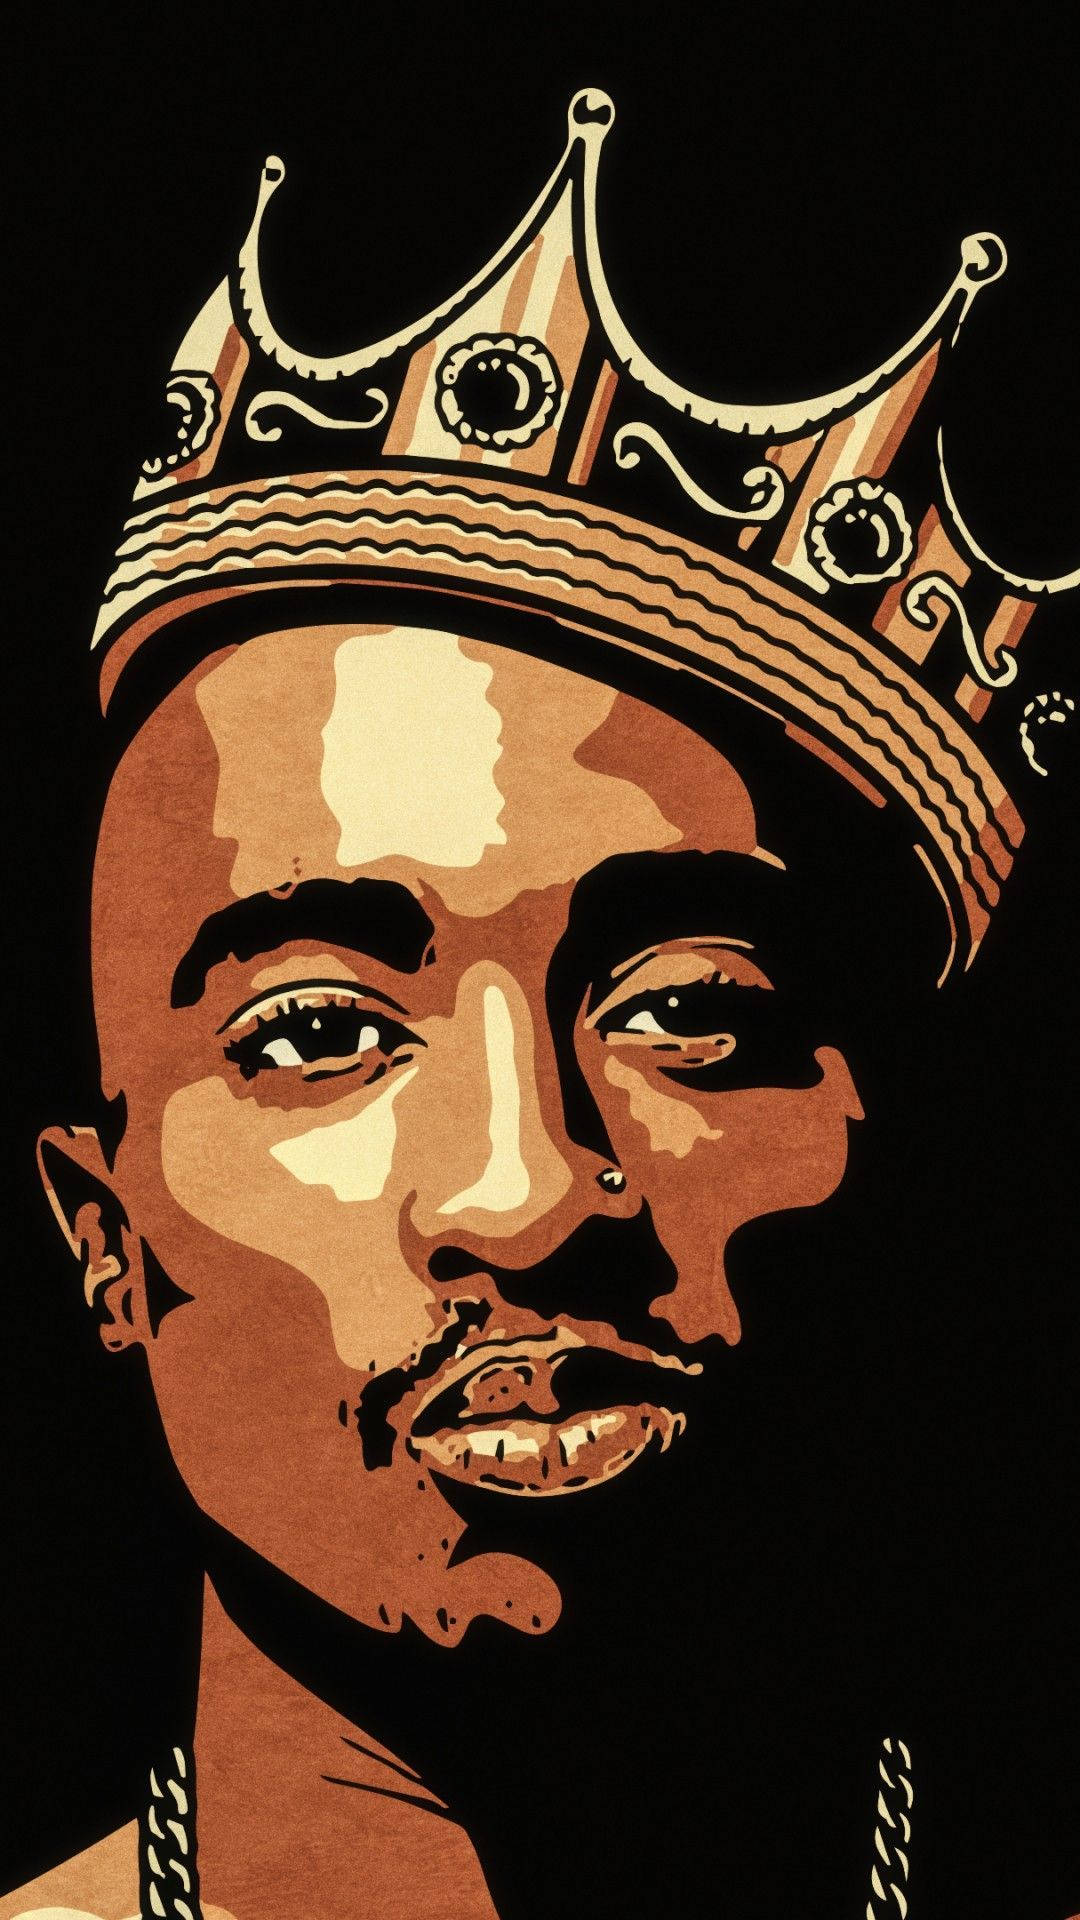 King Tupac Shakur